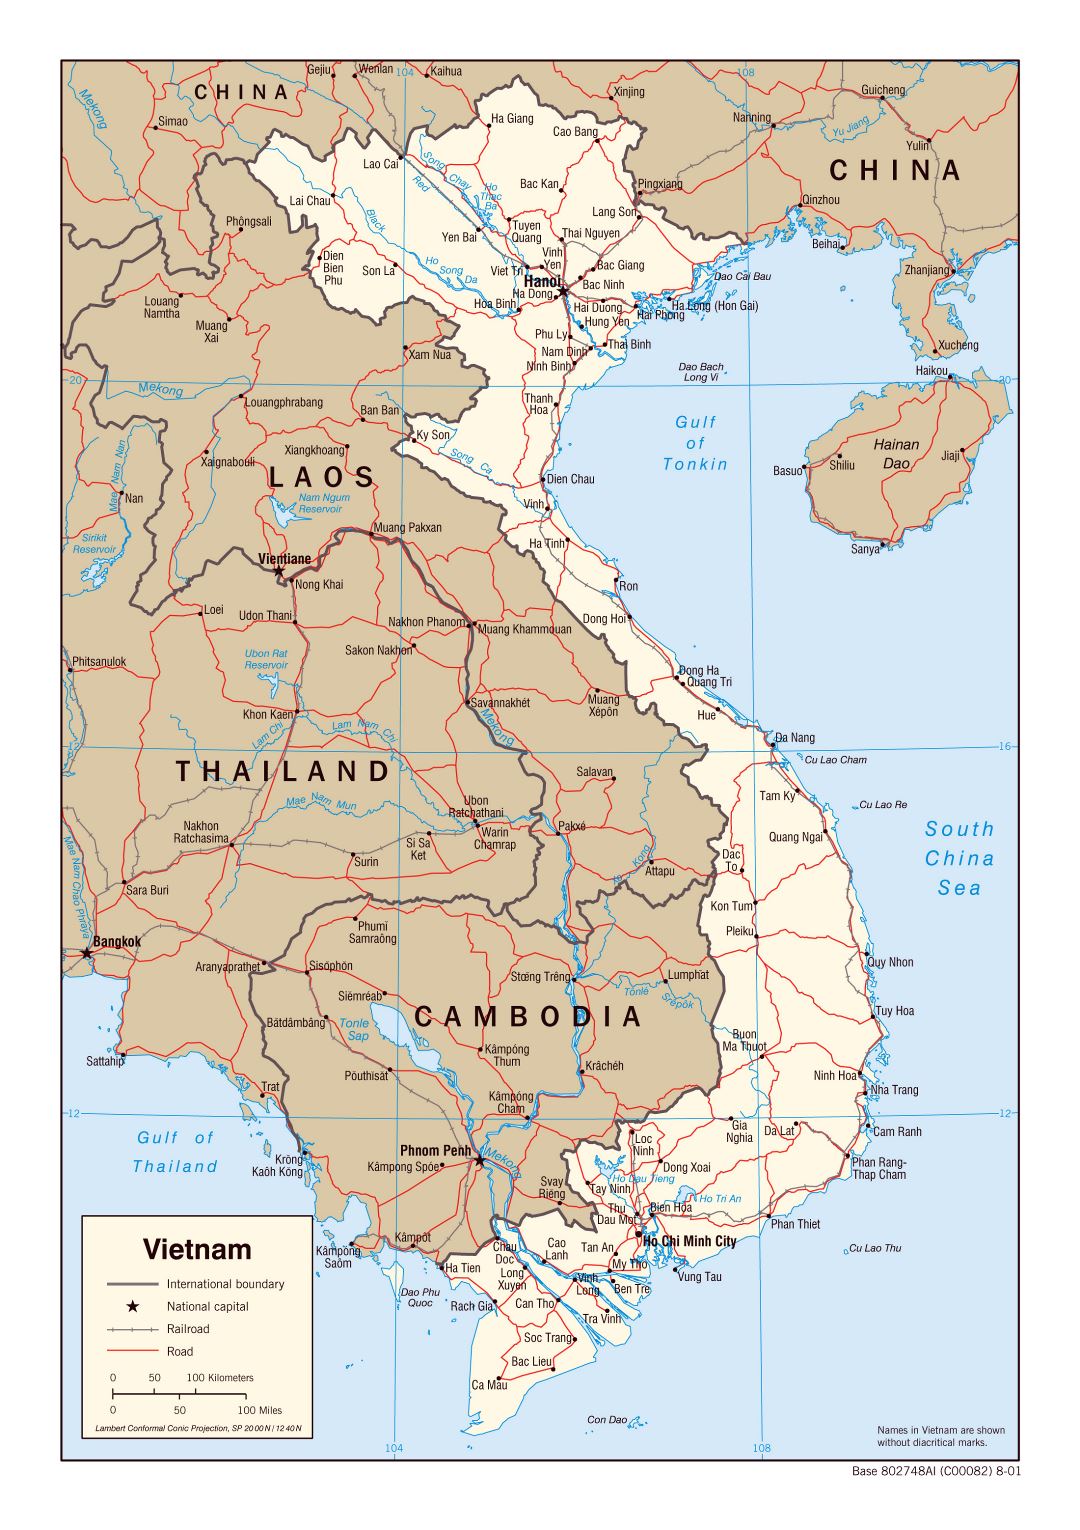 Большая политическая карта Вьетнама с дорогами, железными дорогами и крупными городами - 2001